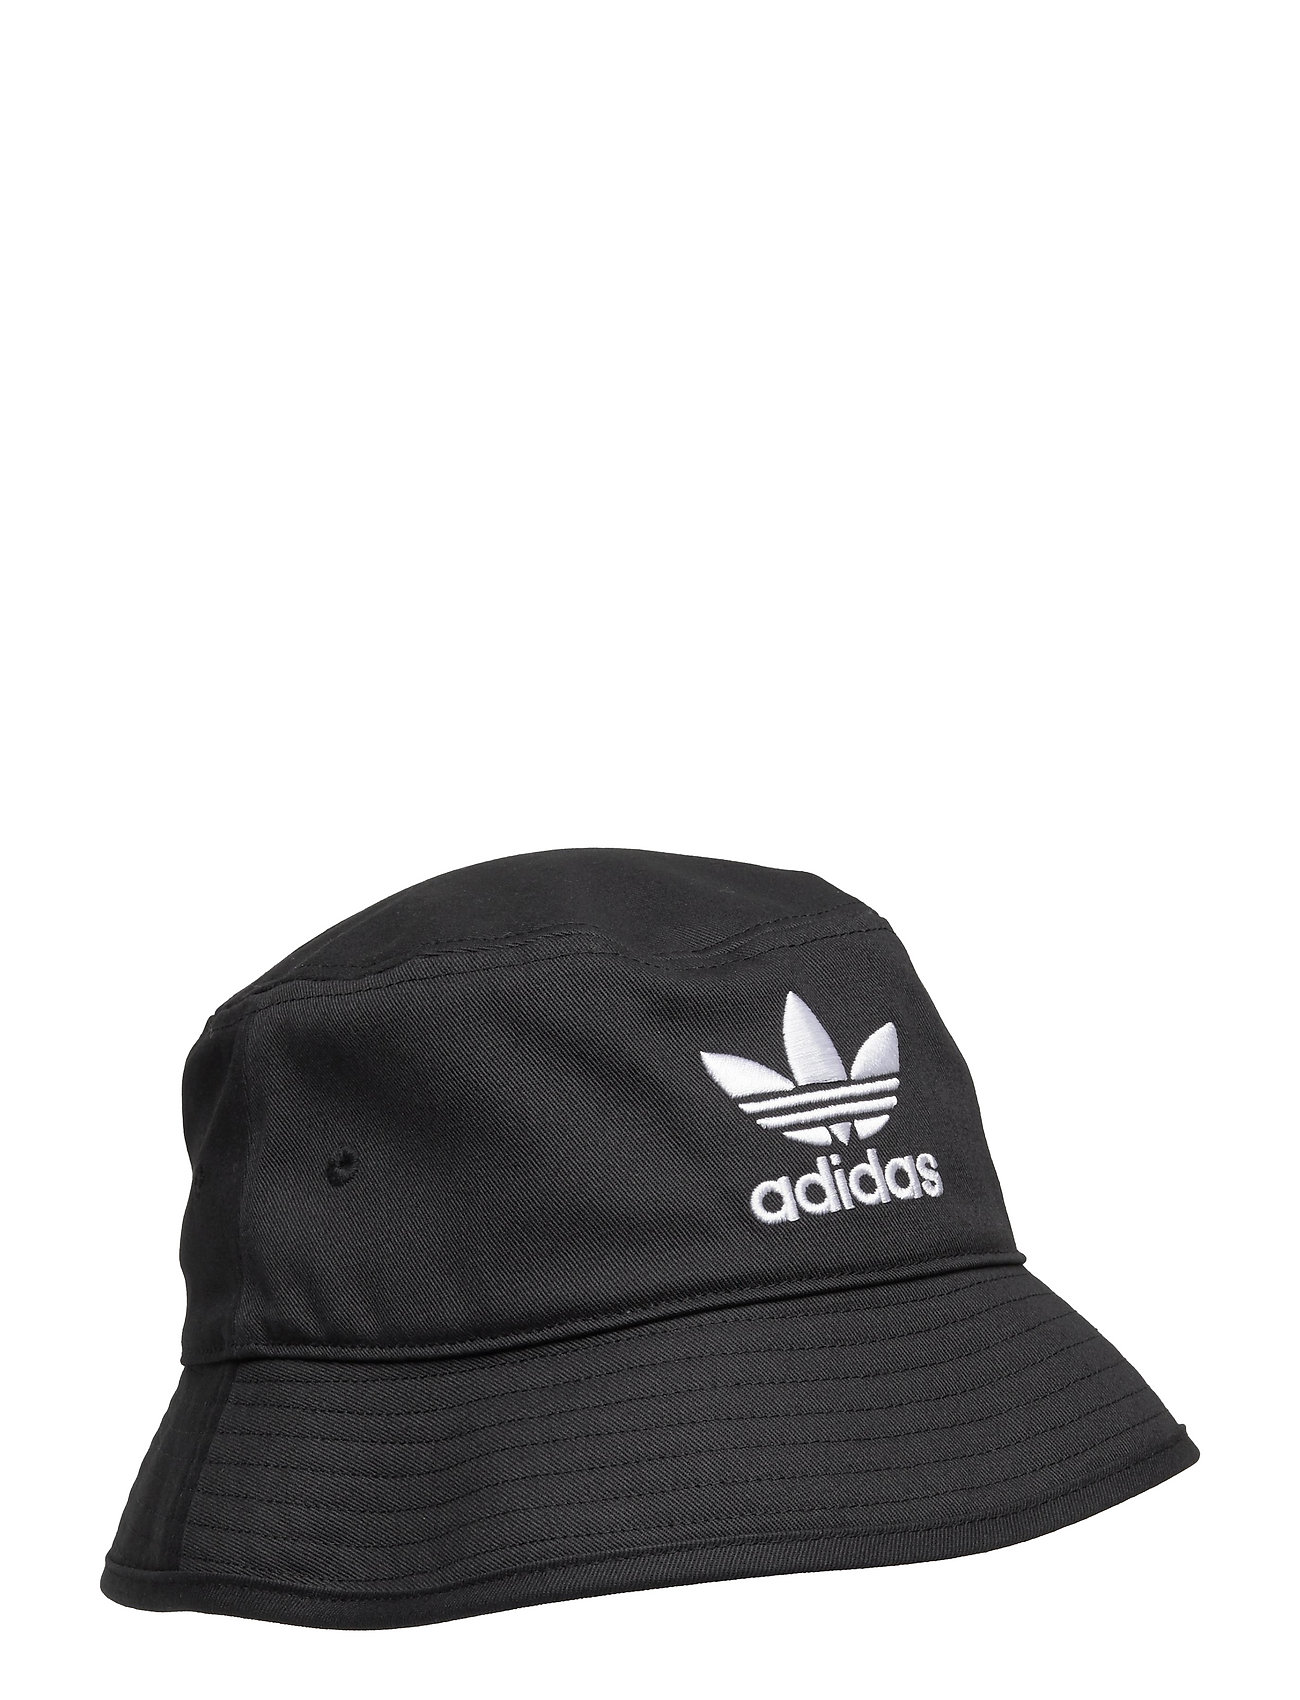 Originals Trefoil Bucket Hat Adicolor Sport Headwear Bucket Hats Black Adidas Originals